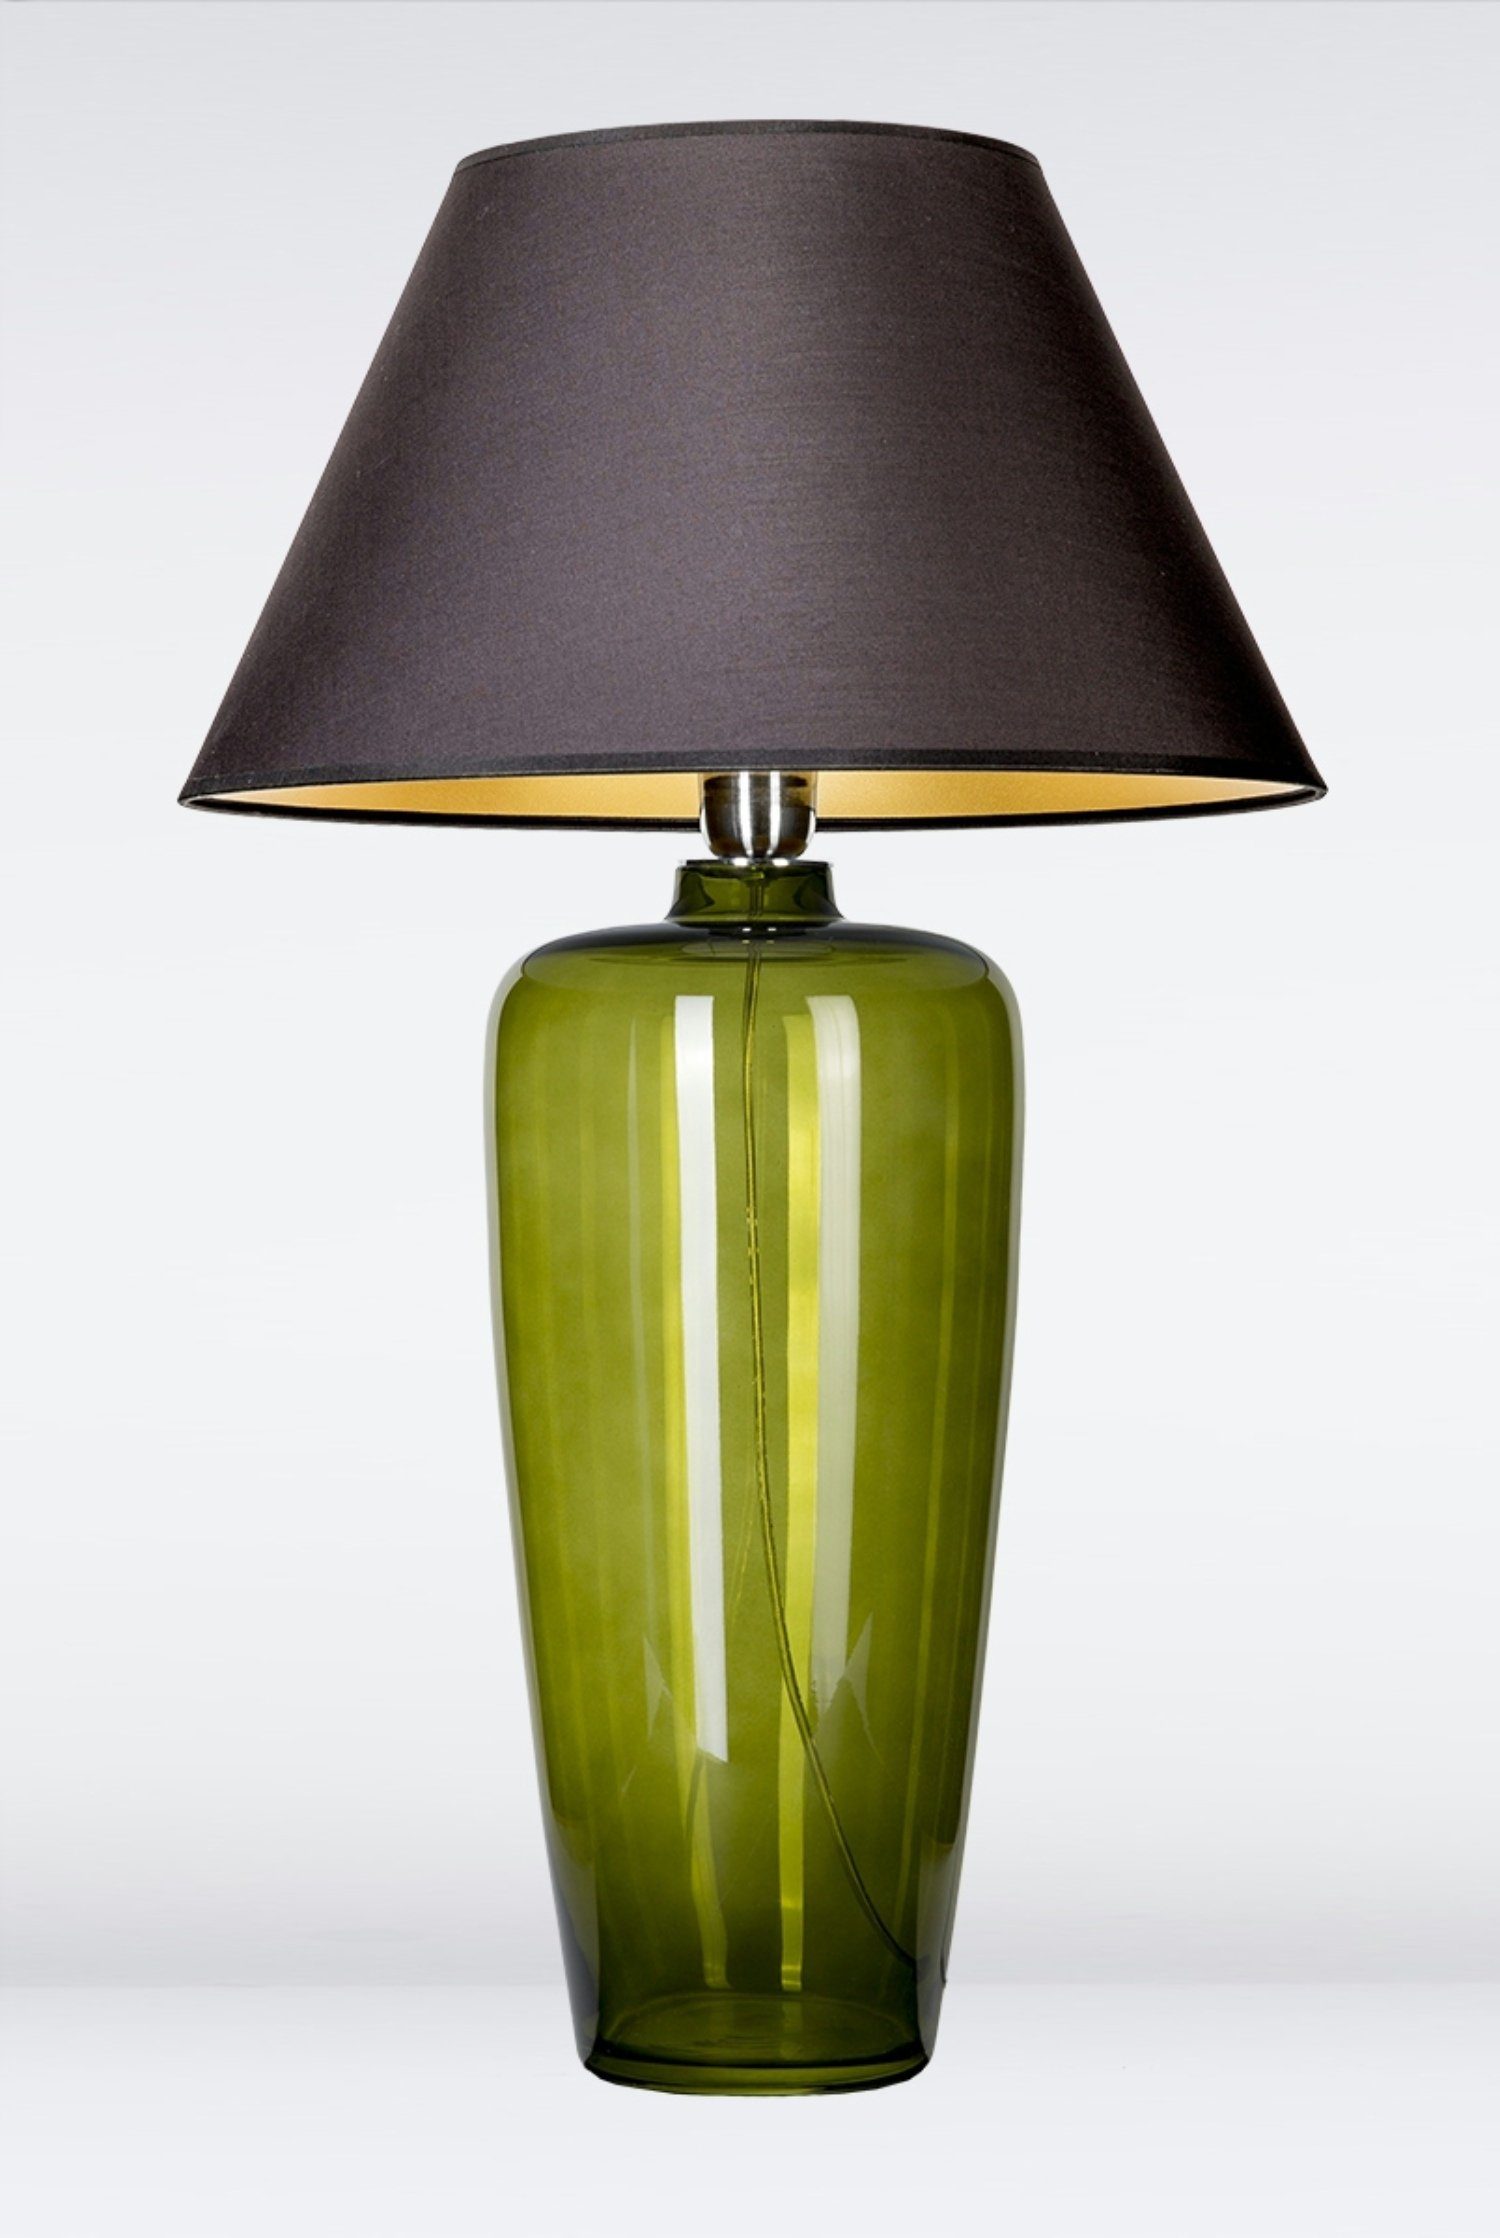 Signature Home Collection Tischleuchte Tischlampe aus Glas mit Lampenschirm schmal, ohne Leuchtmittel, Warmweiß, Glaslampe mundgeblasen grün